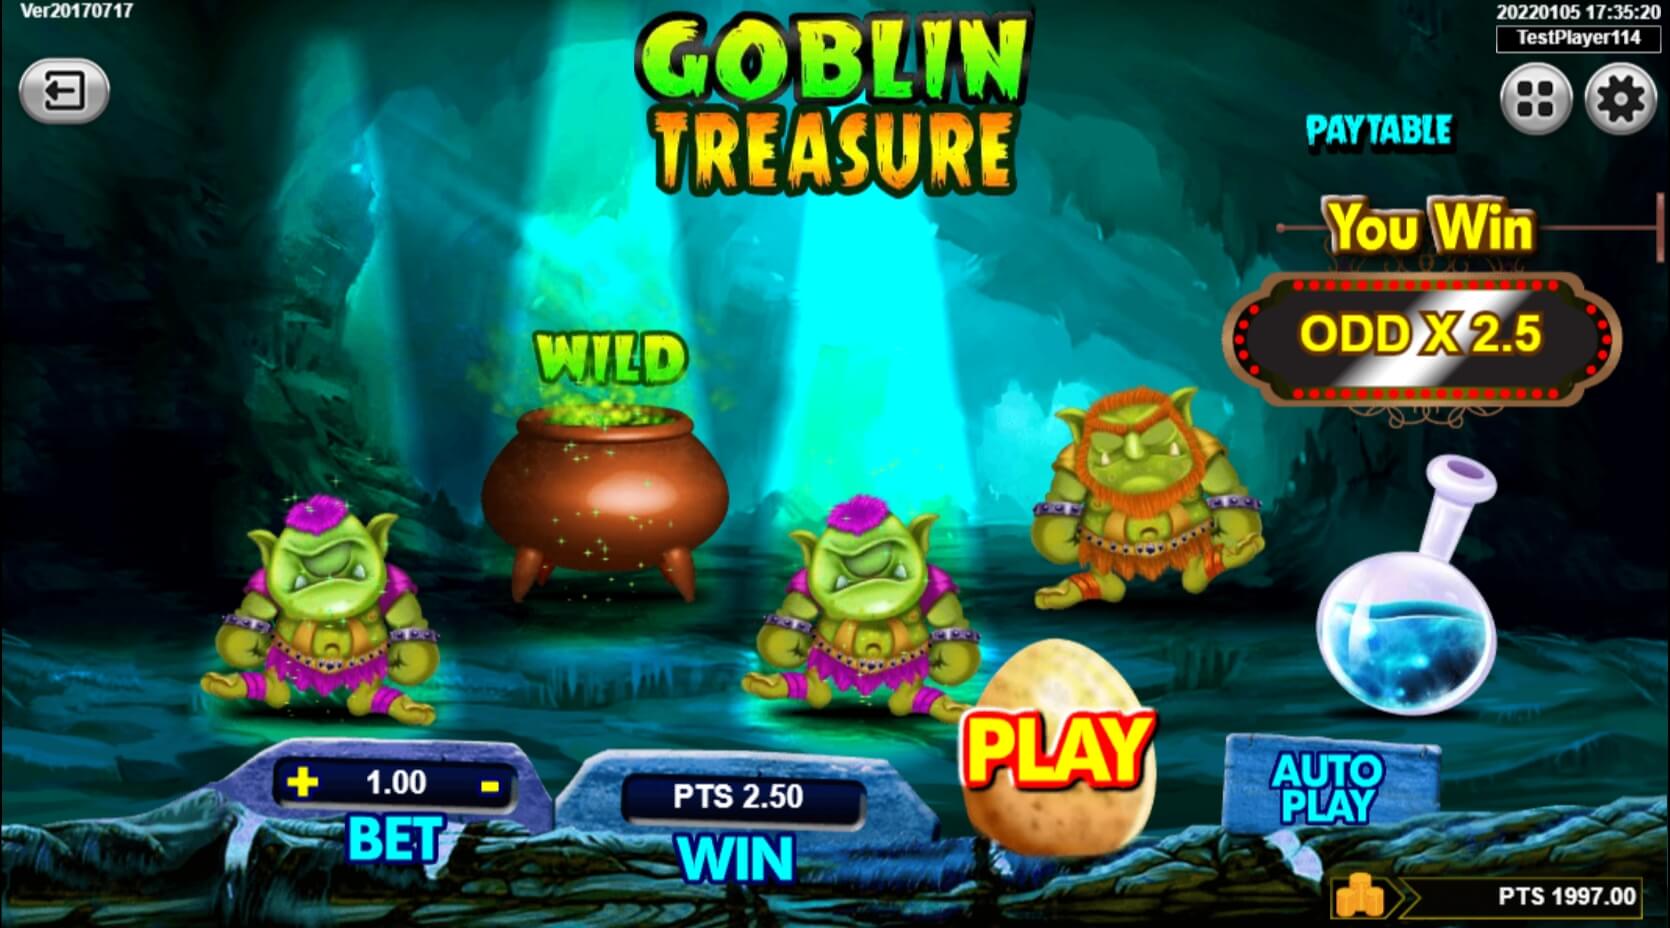 Goblin Treasure Spadegaming ทางเข้า Superslot Wallet